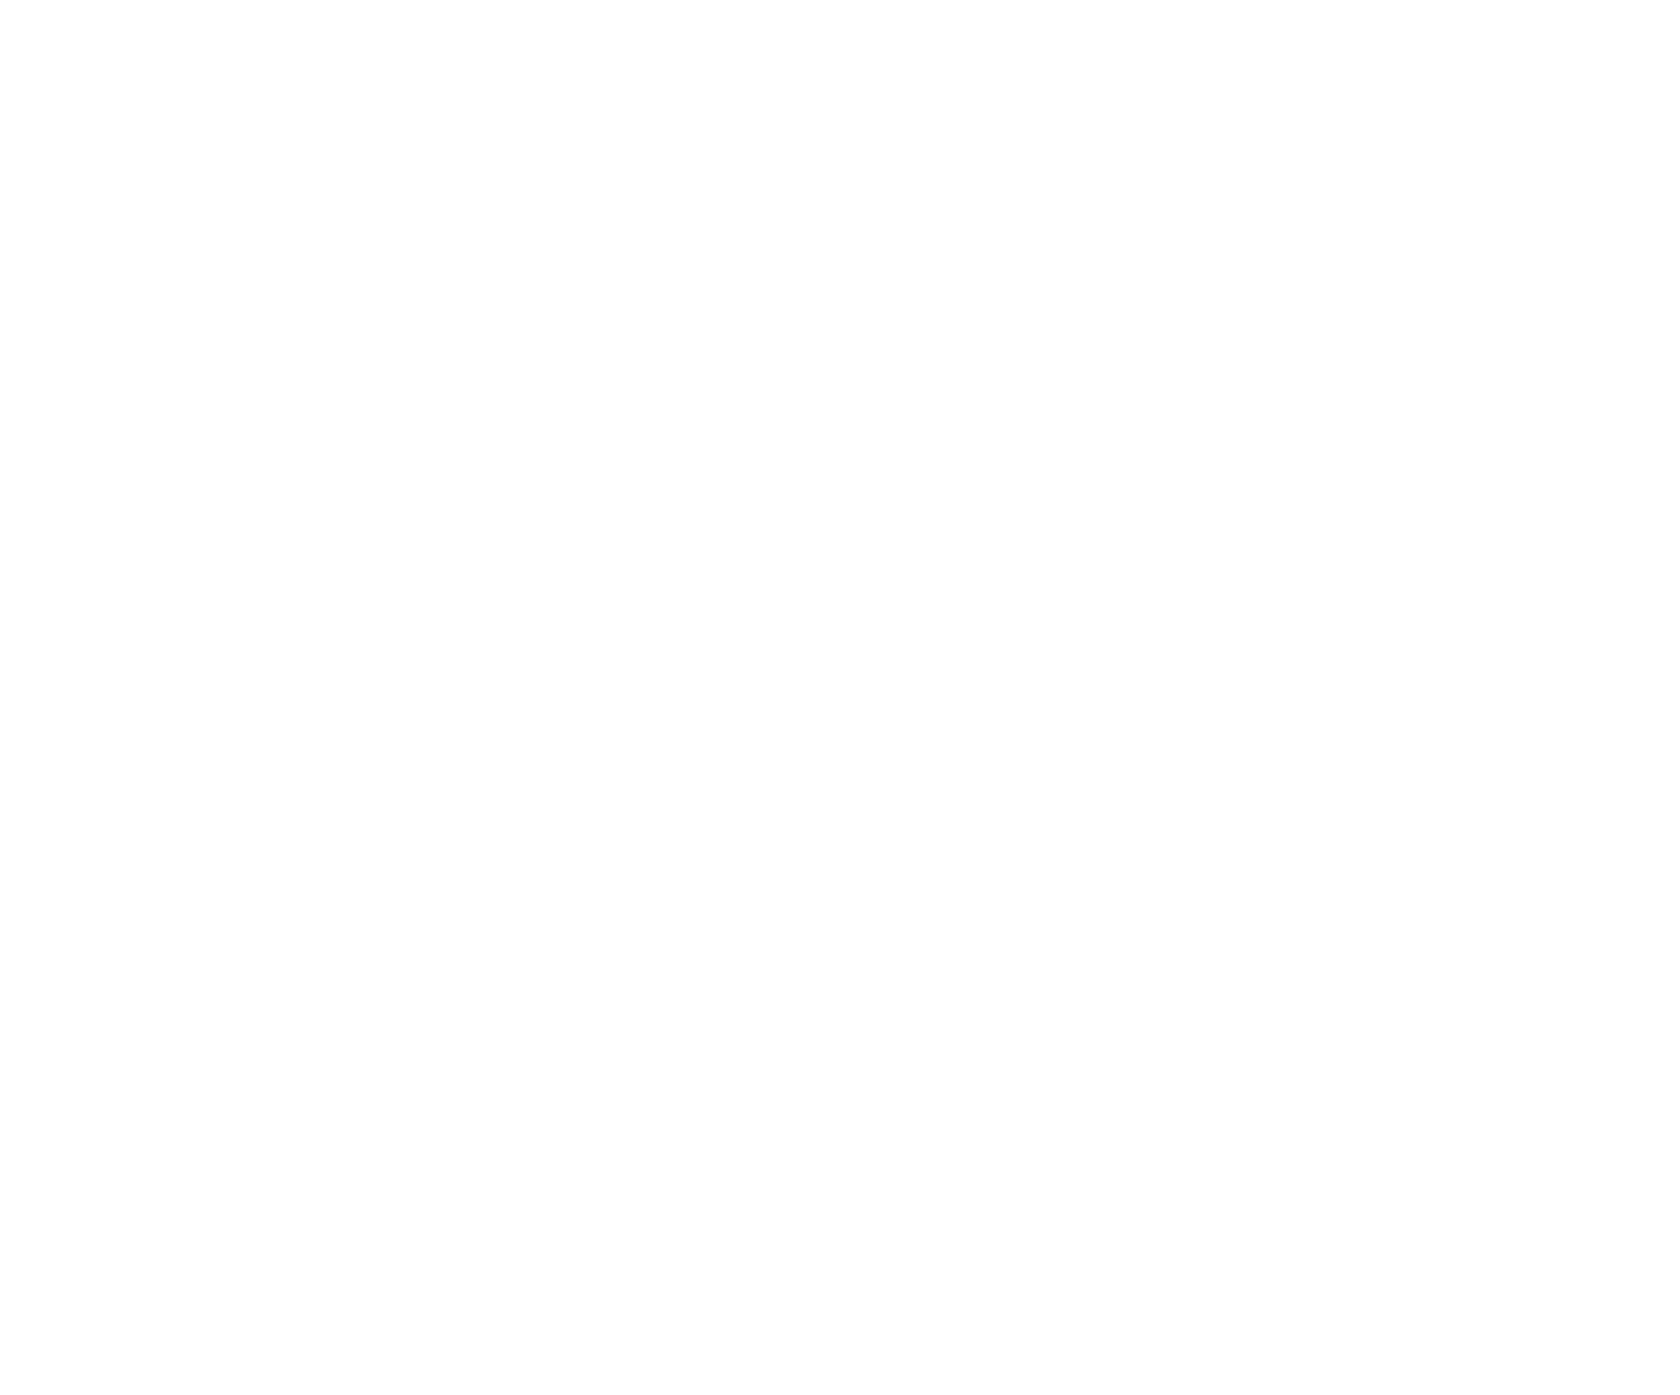 Лот №9: Картина «К святой Матроне Московской». Холст, темпера, 51х61 см (автор: Комарова Е.). Начальная цена: 60 000 руб.